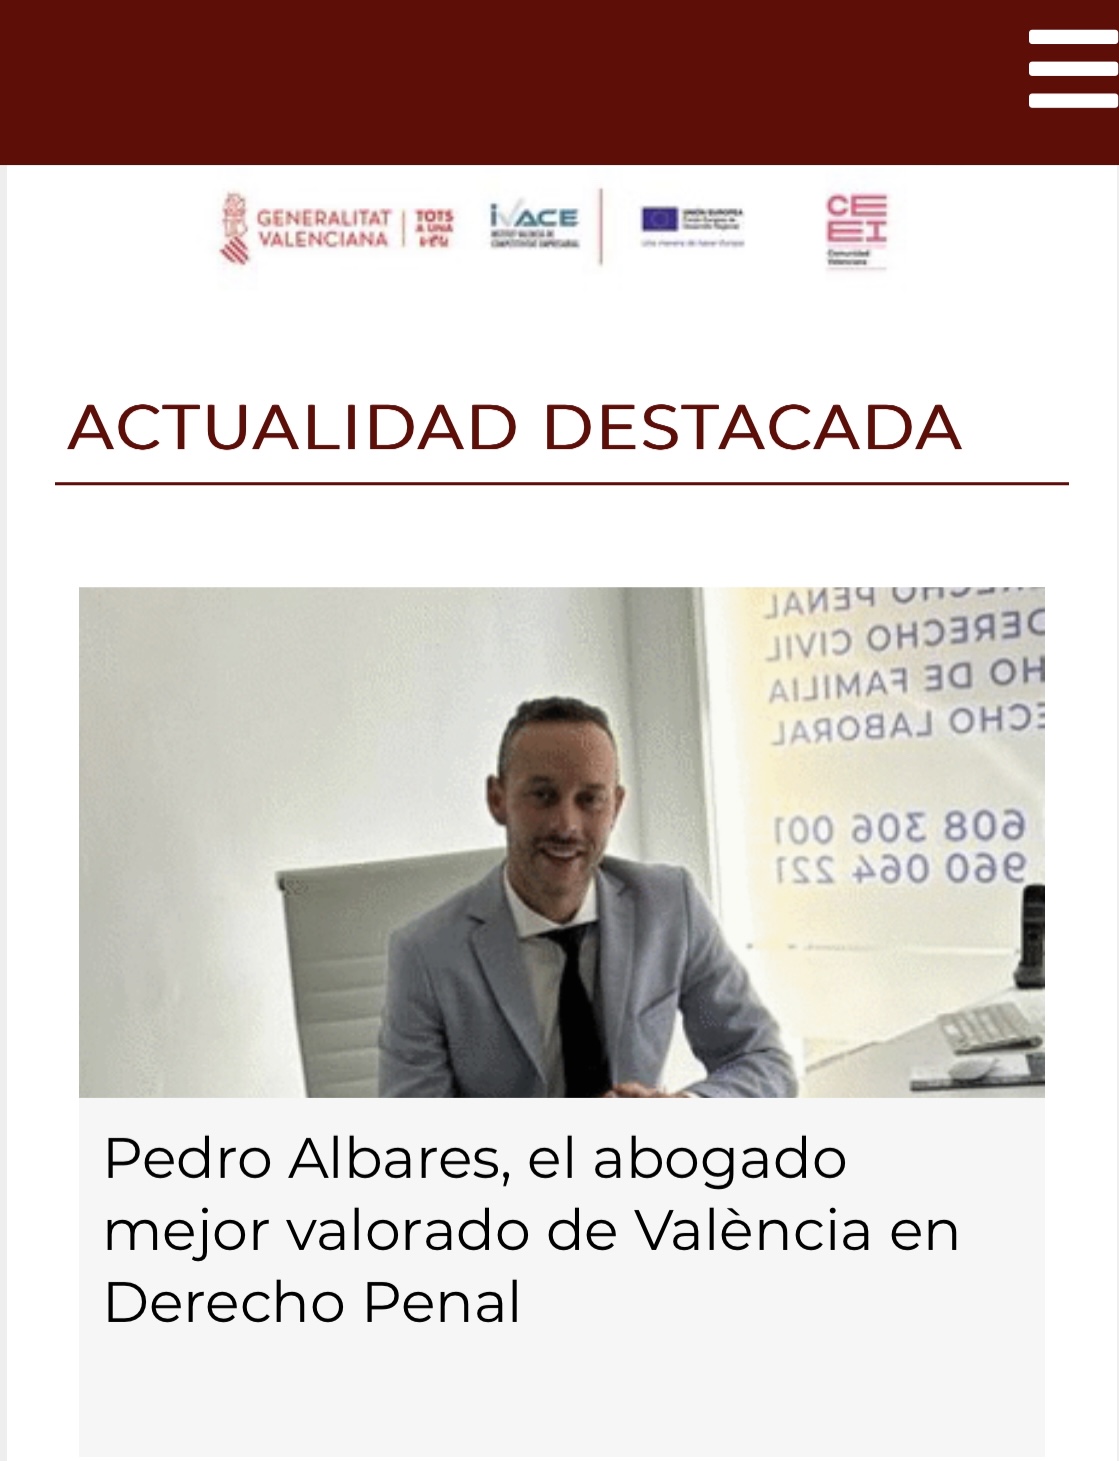 NY
Pedro Albares, el abogado
mejor valorado de Valencia en
Derecho Penal